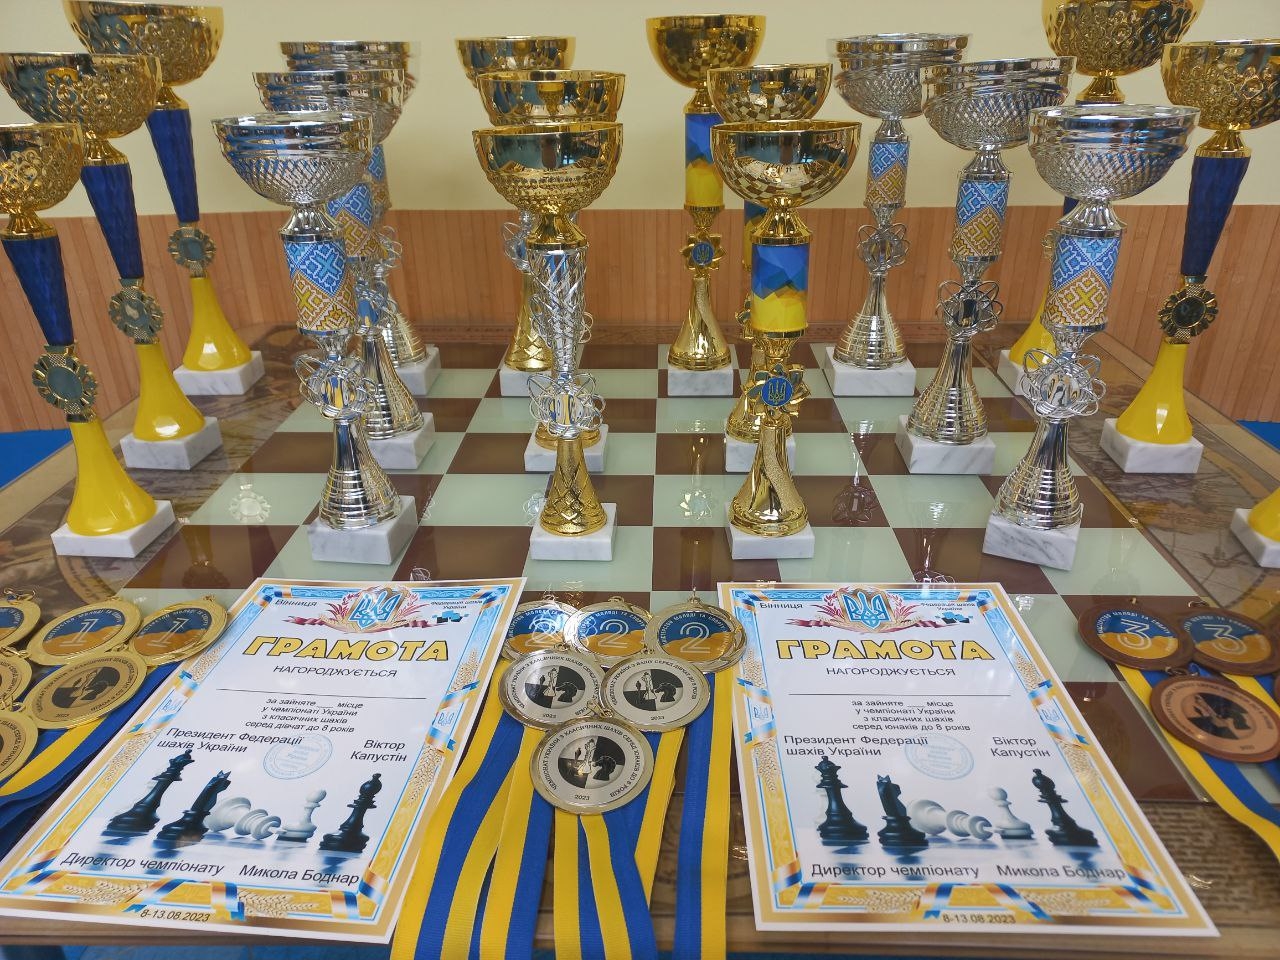 У Вінниці вперше проходить чемпіонат України з шахів серед діток до 8 років